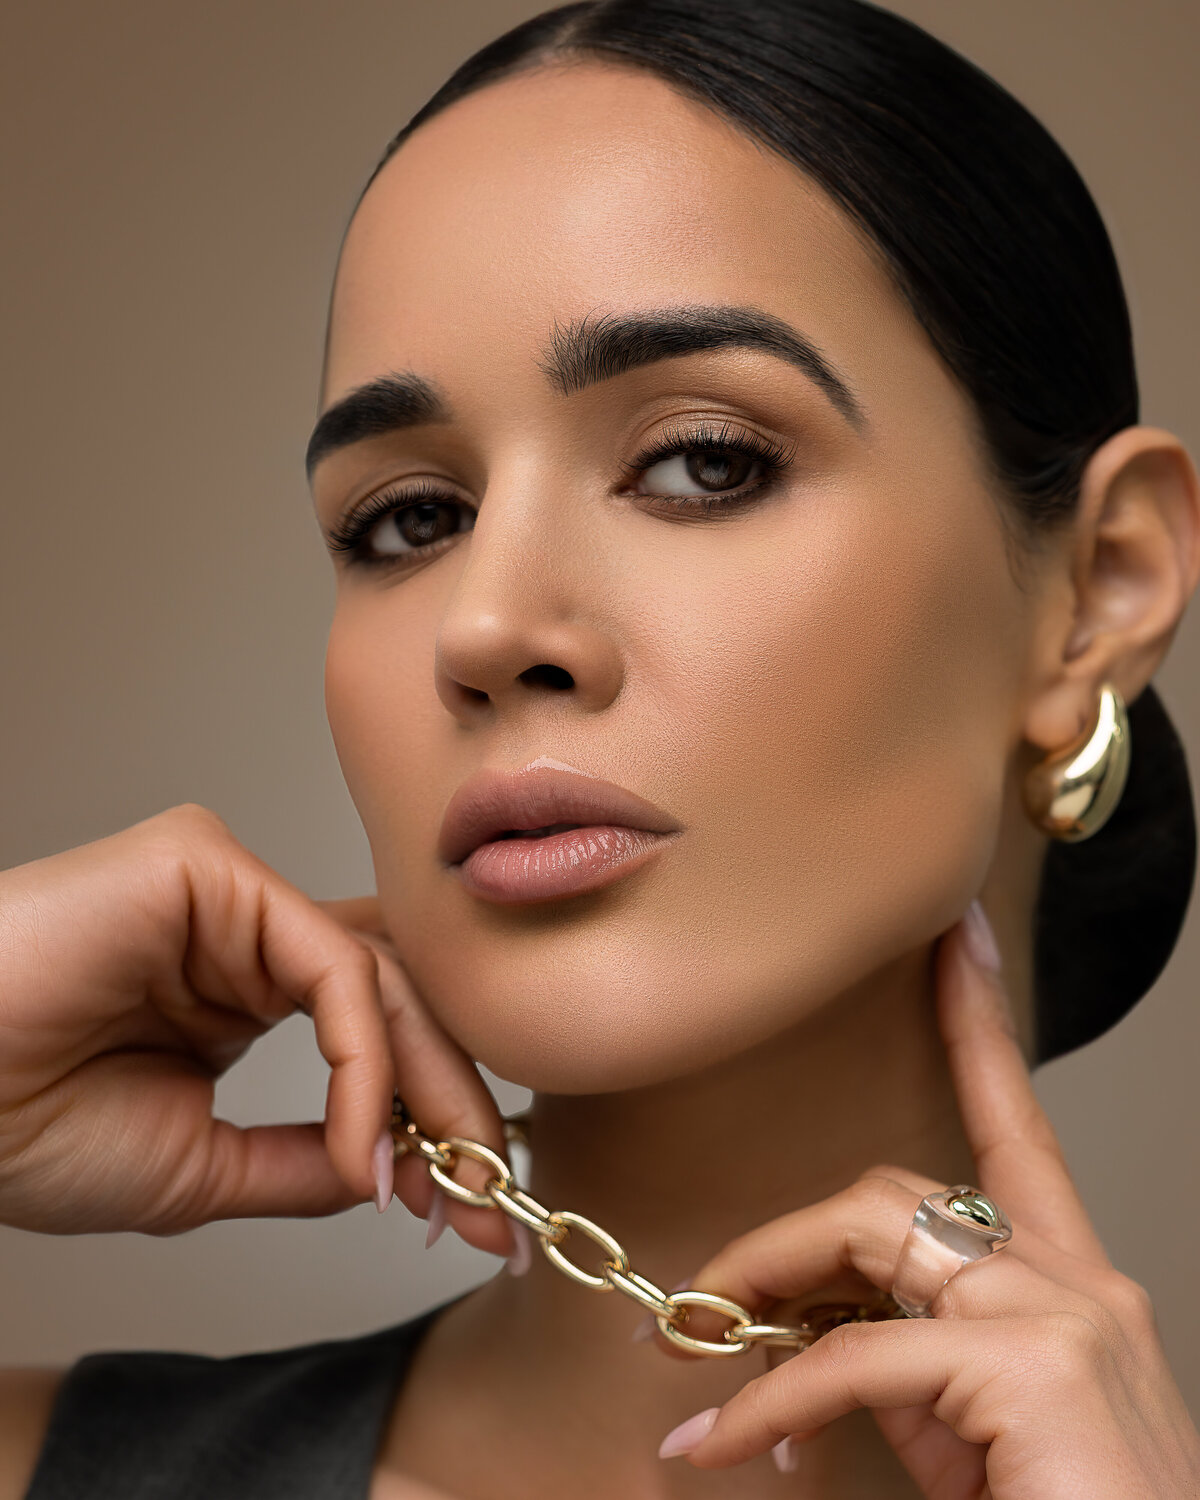 model wearing gold jewelry